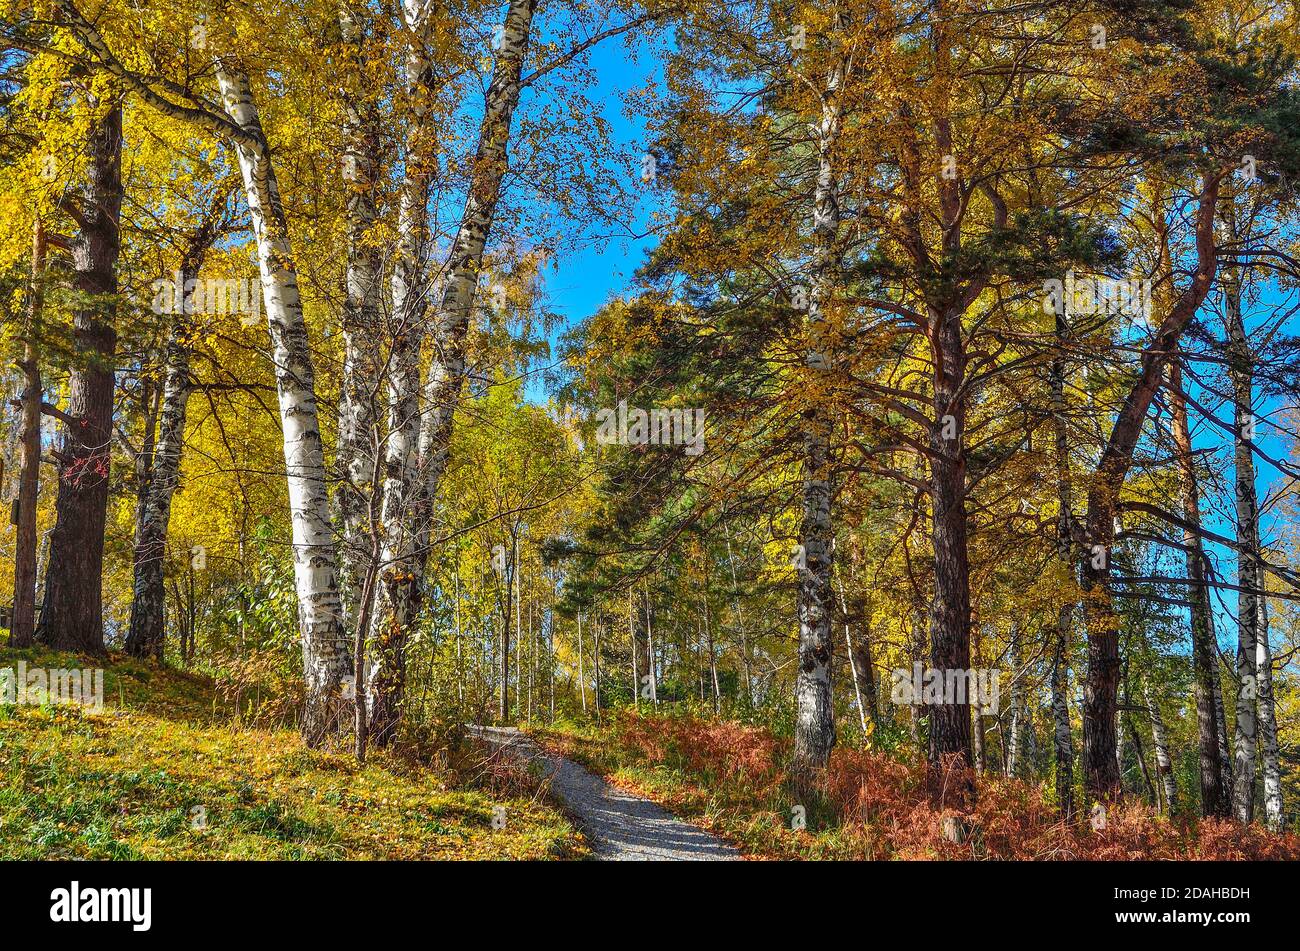 Schotter gewundener Weg durch den Herbst bunten Wald auf Hügel. Weiße Stämme und goldenes Laub von Birken, grüne Nadeln von Kiefern, rotes trockenes Gras Stockfoto